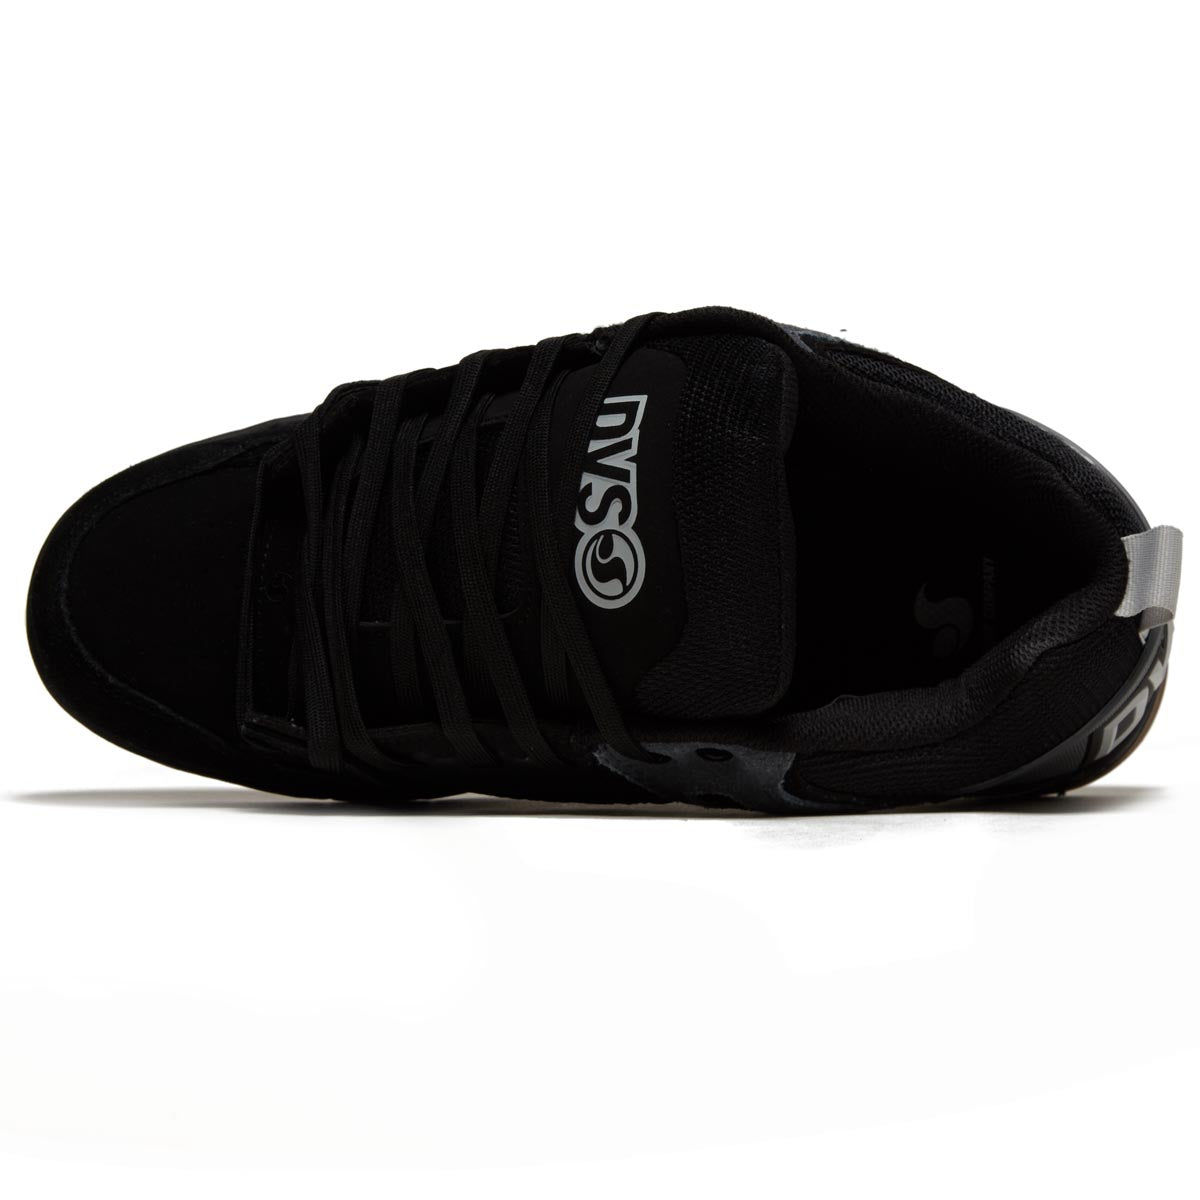 DVS Comanche Shoes - Black/Charcoal/Gray Suede image 3